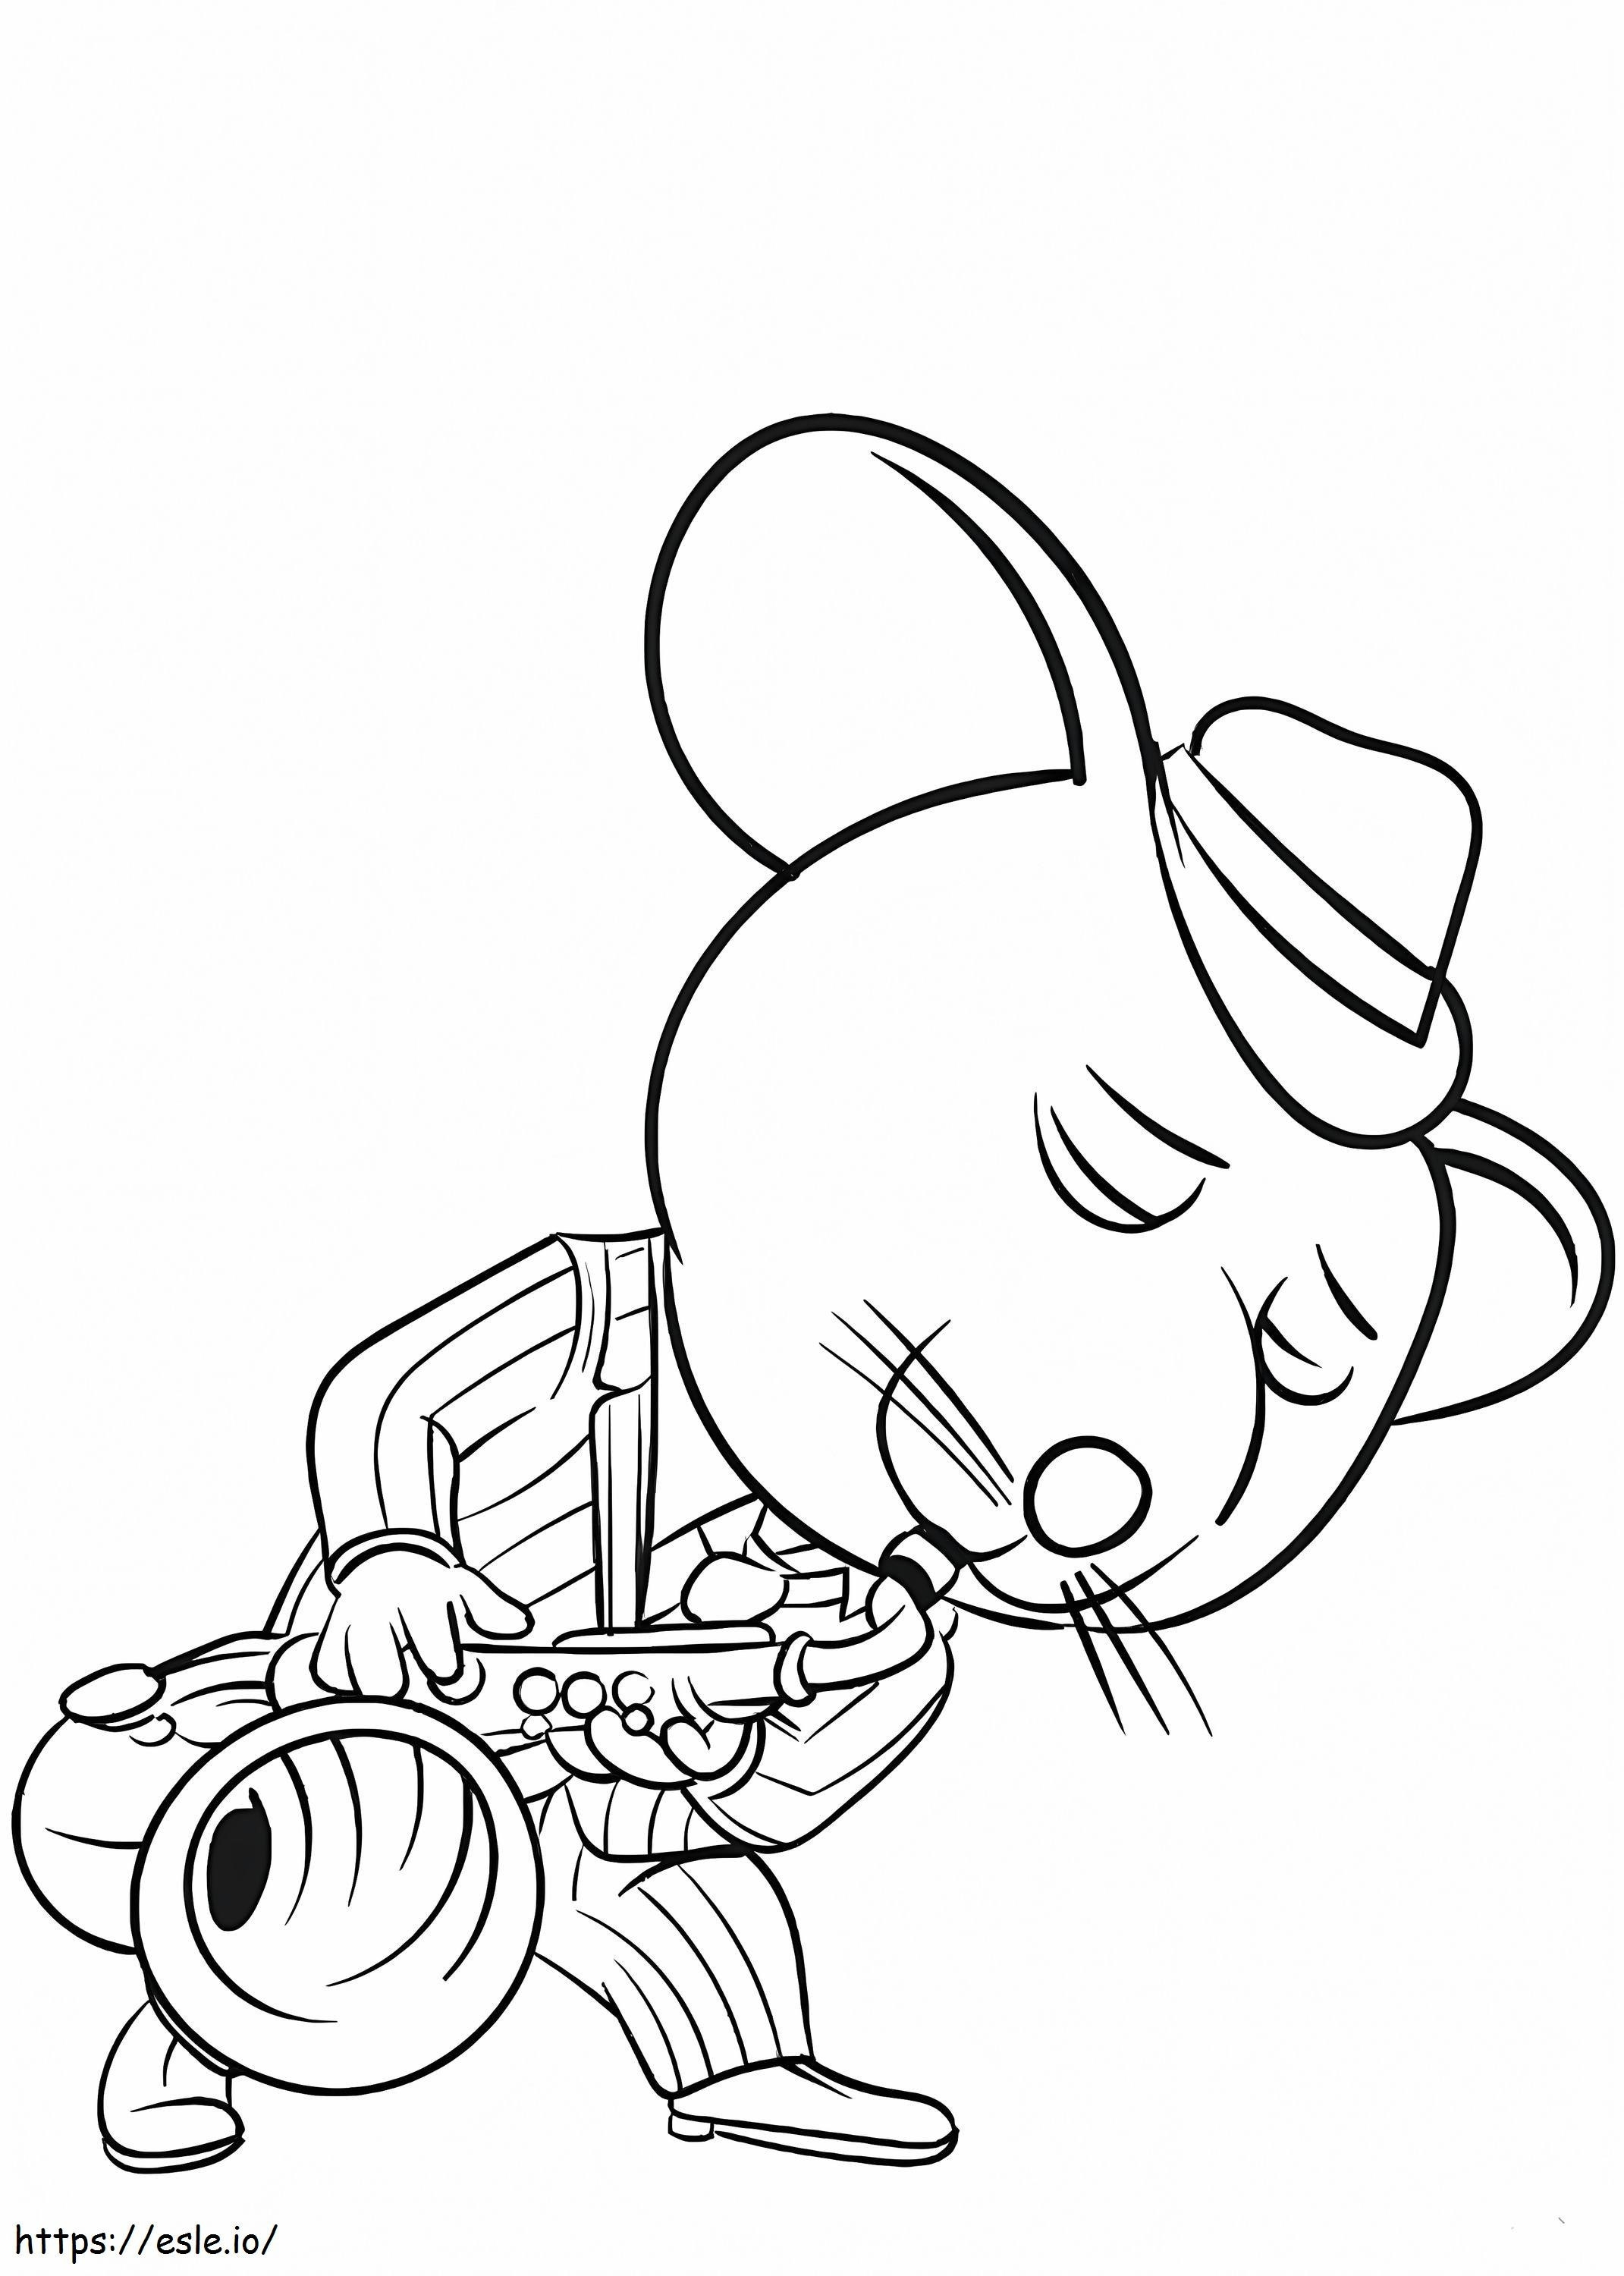 Mysz gra na saksofonie kolorowanka